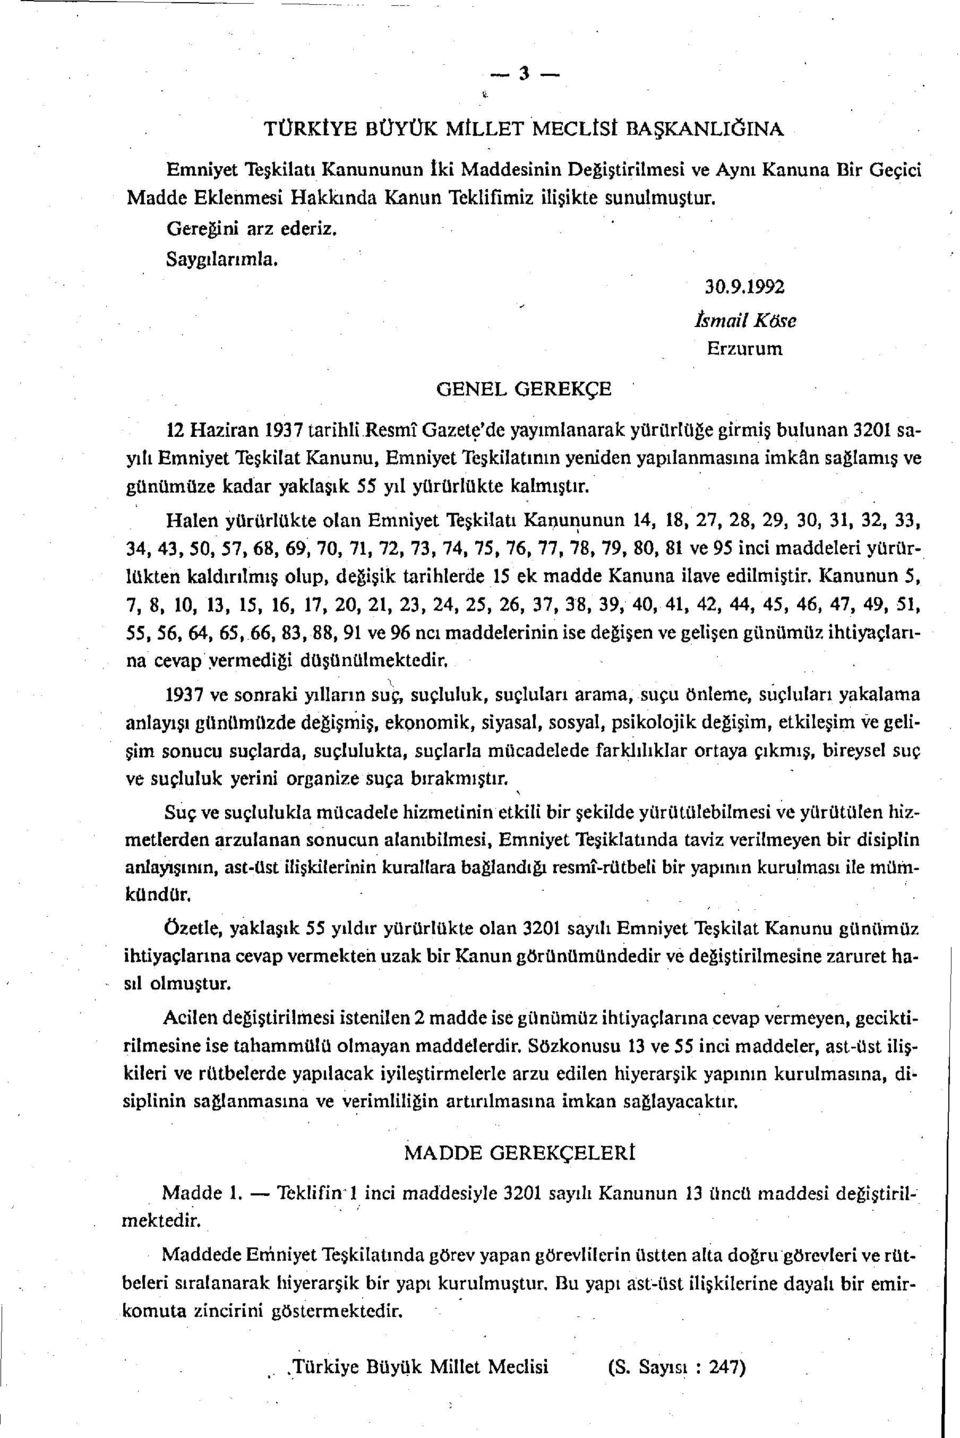 1992 GENEL GEREKÇE İsmail Köse Erzurum 12 Haziran 197 tarihli Resmî Gazete'de yayımlanarak yürürlüğe girmiş bulunan 201 sayılı Emniyet Teşkilat Kanunu, Emniyet Teşkilatının yeniden yapılanmasına